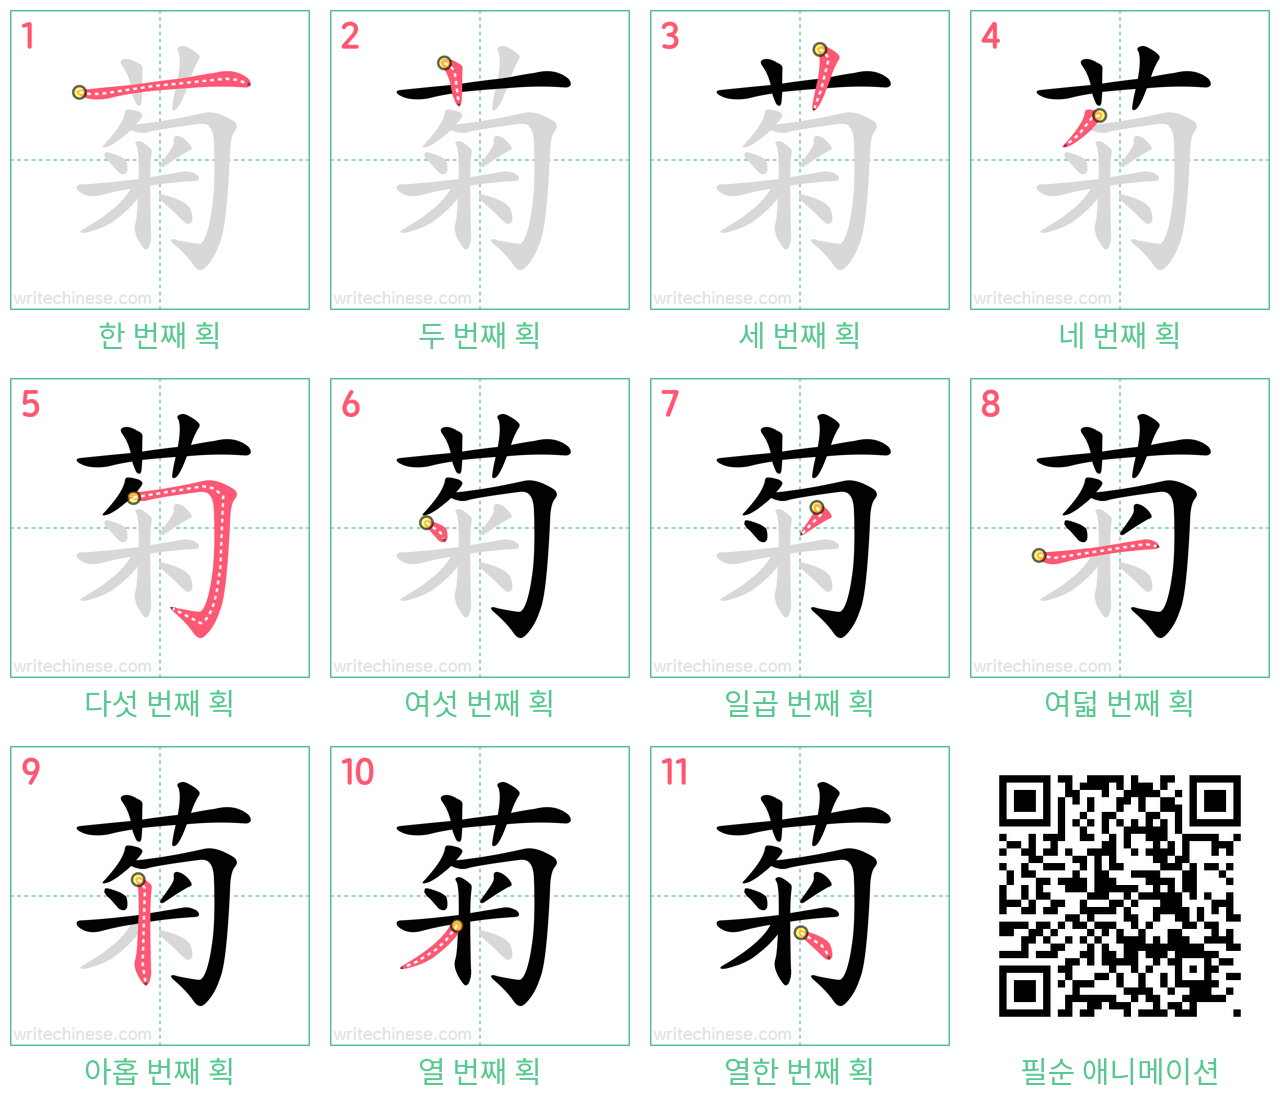 菊 step-by-step stroke order diagrams